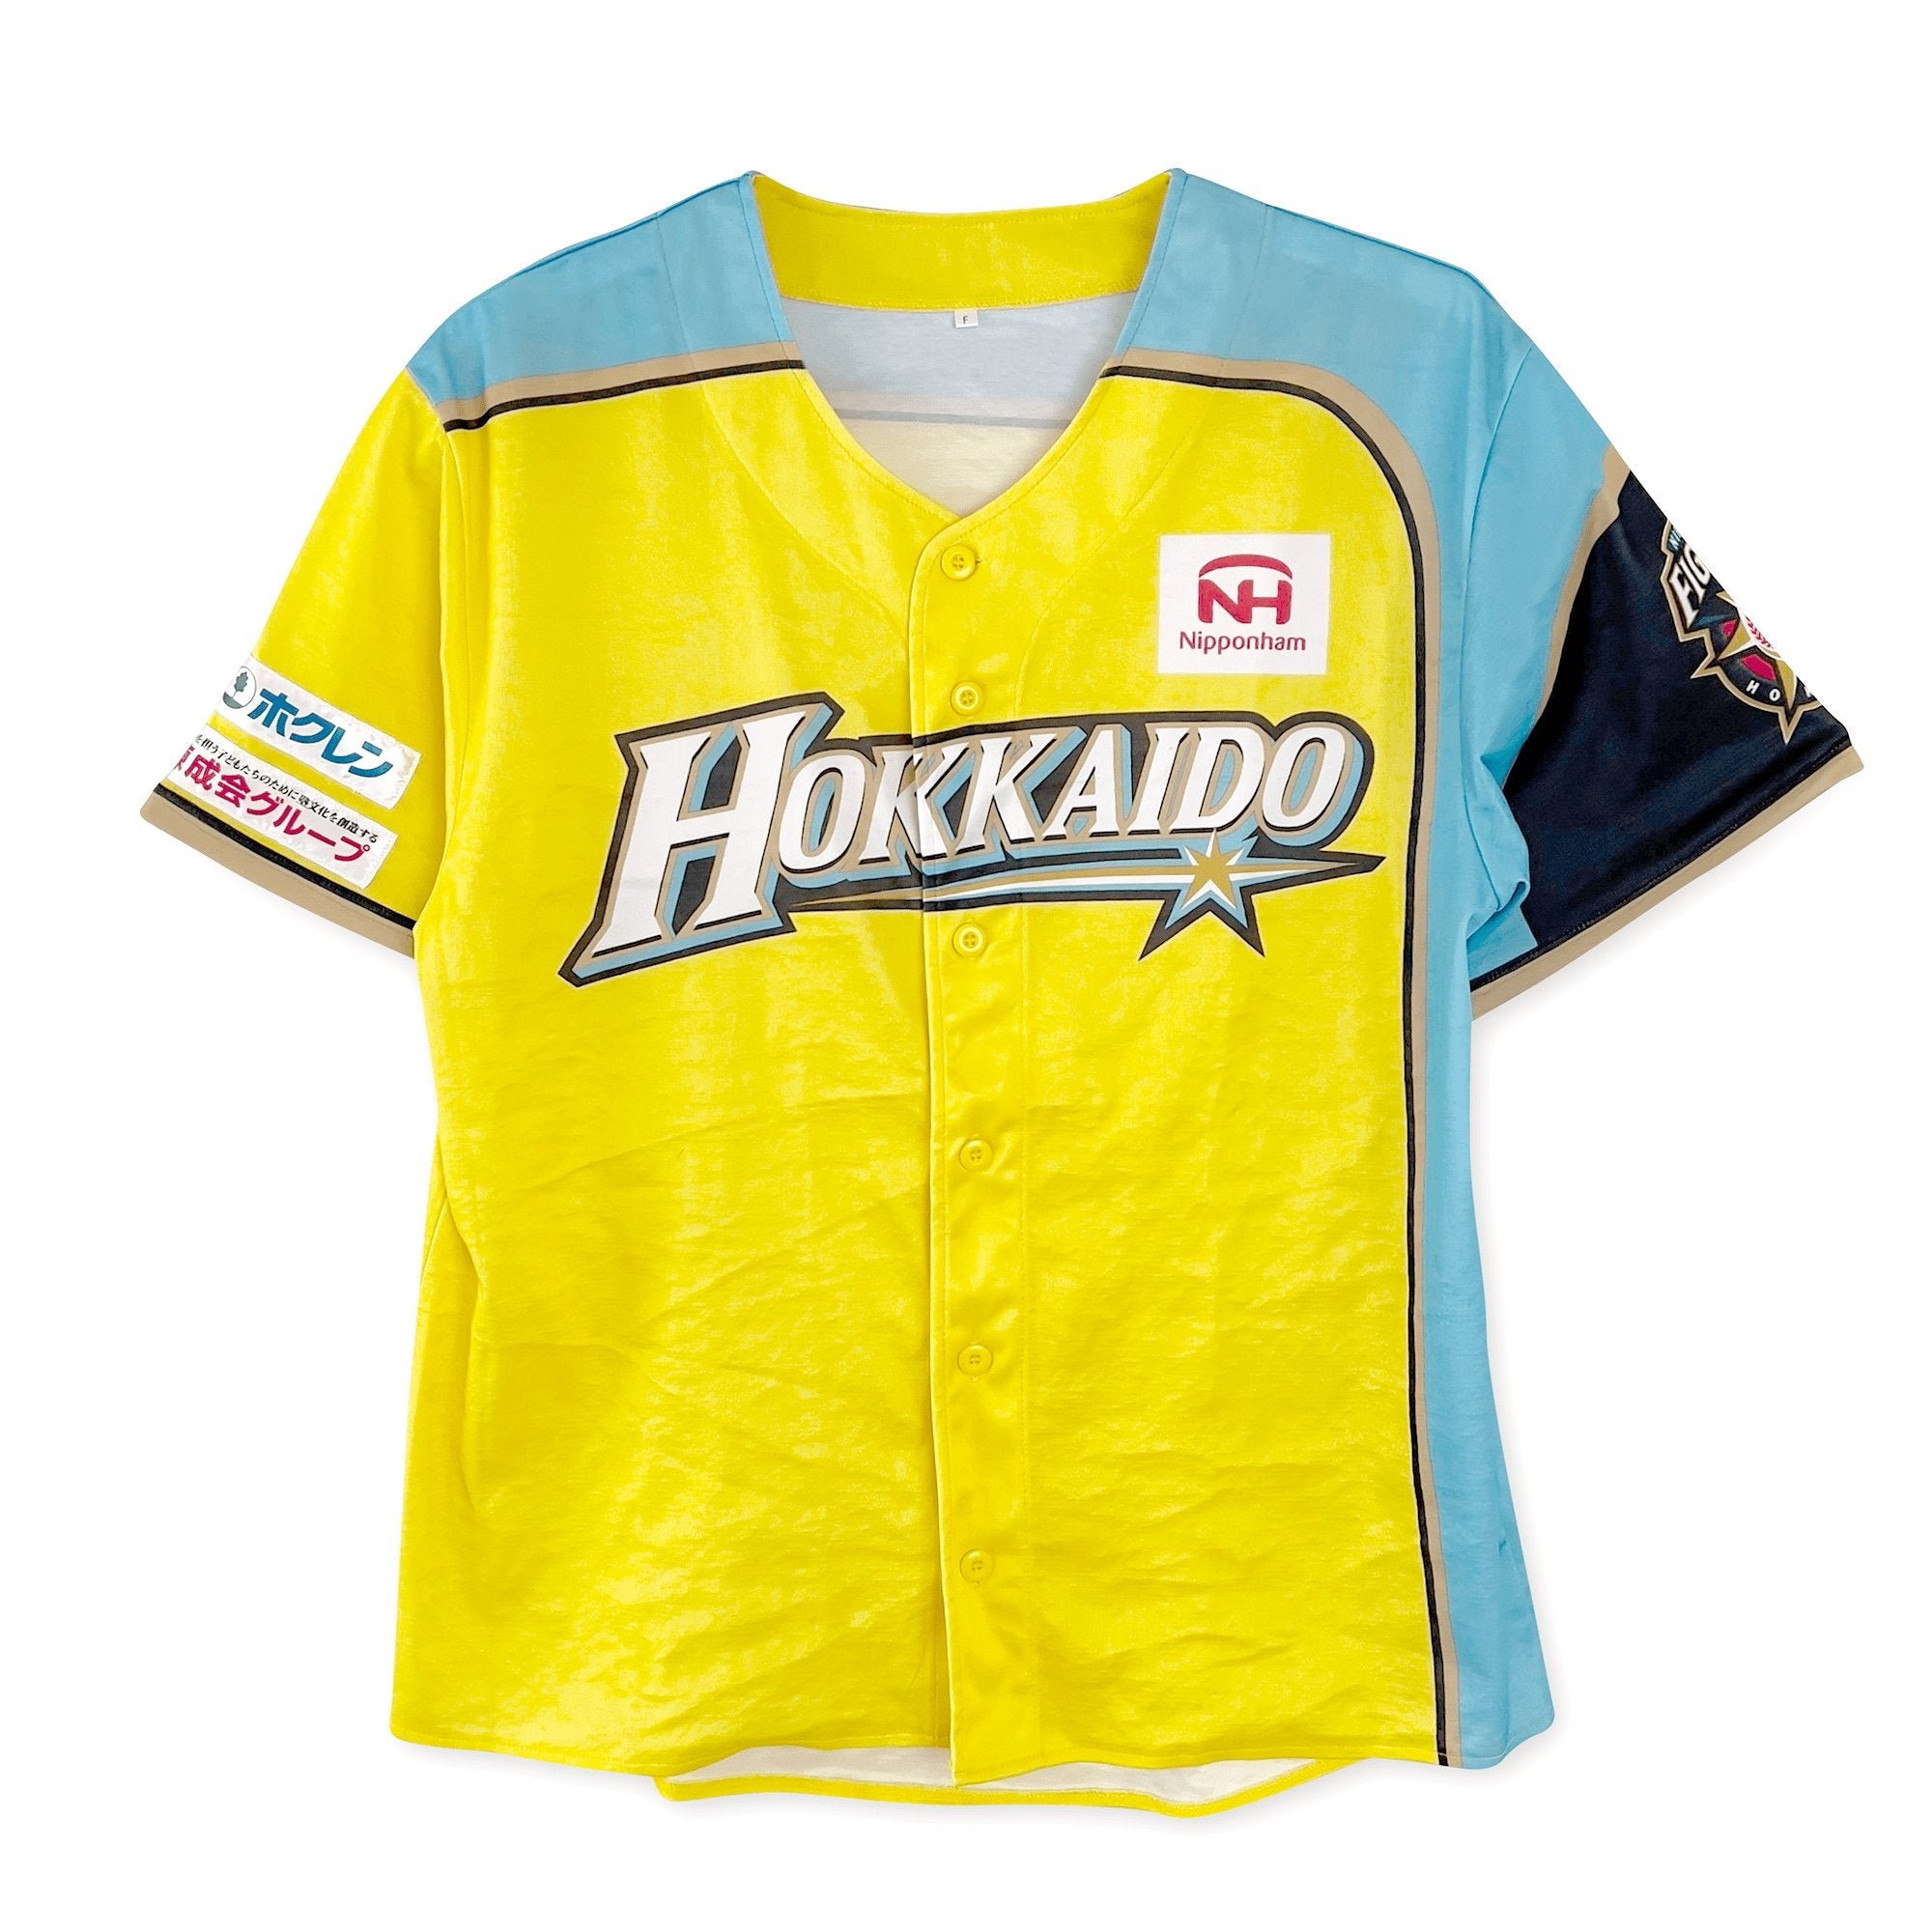 Japan Baseball Fan Jerseys for sale